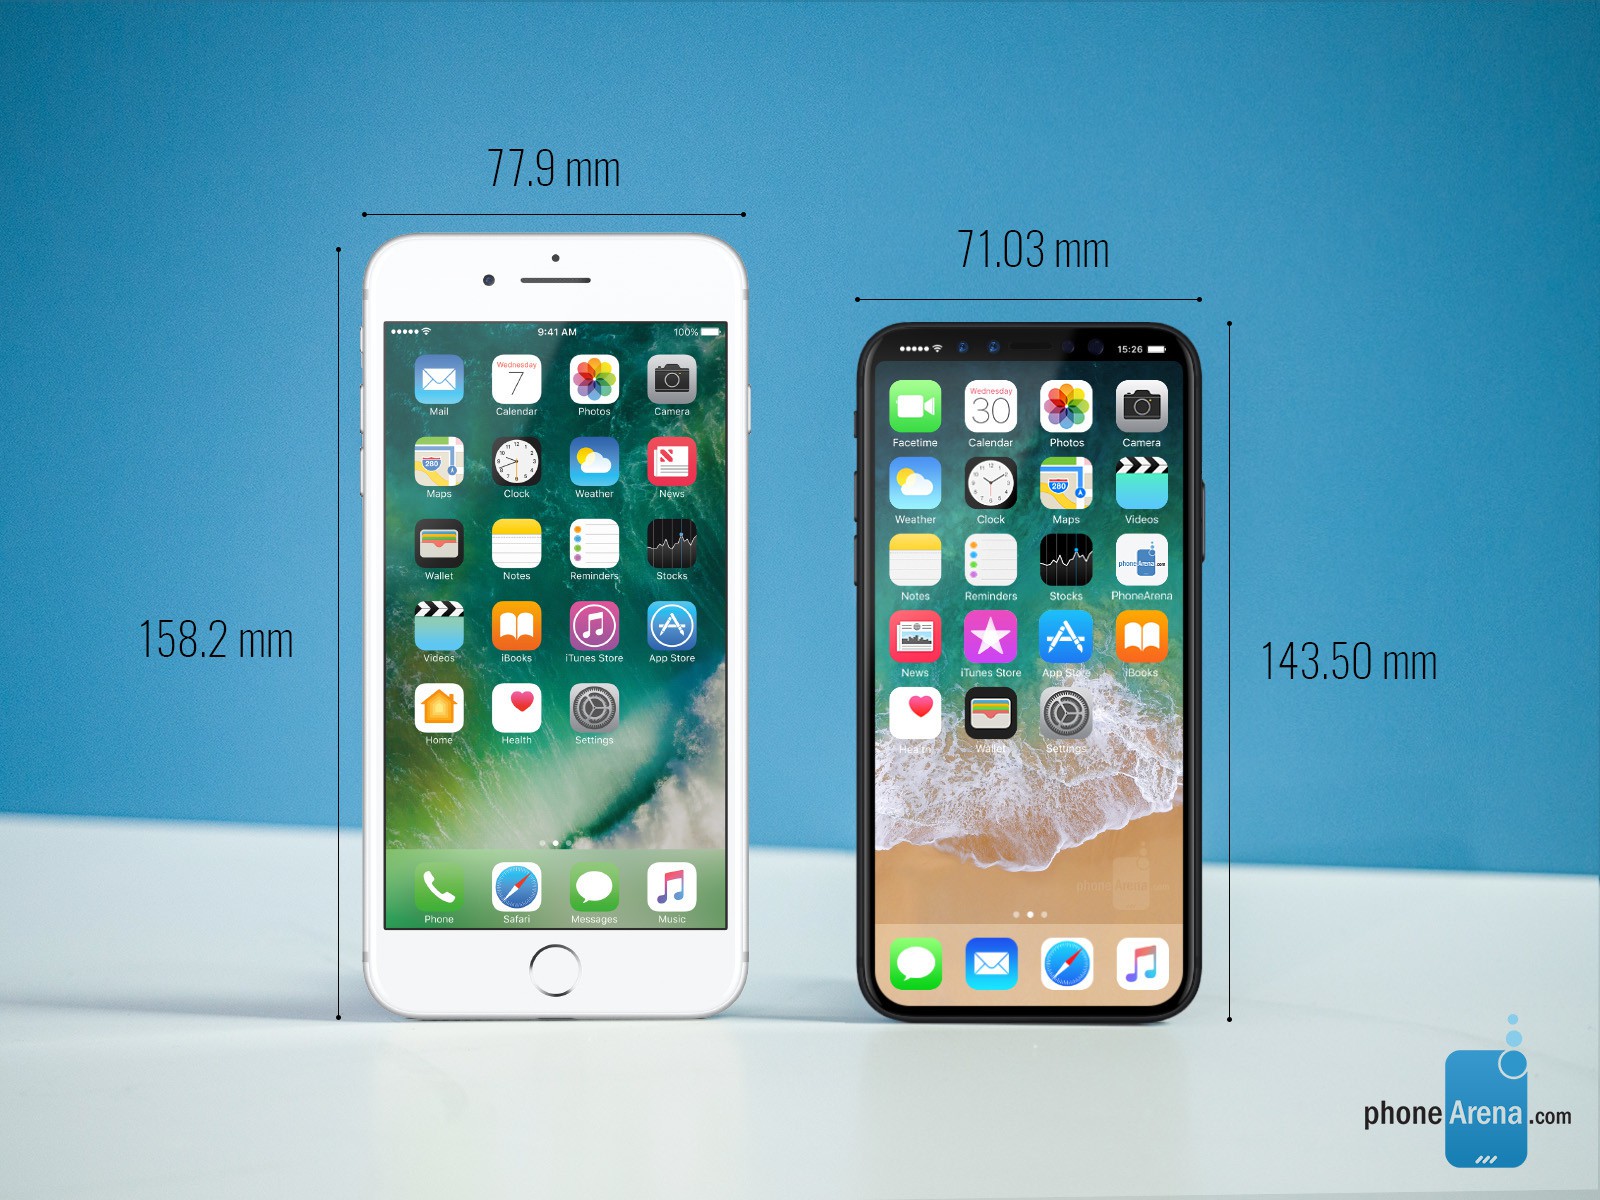 So sánh kích thước iPhone 8 Plus với các smartphone khác: iPhone 8 Plus được trang bị kích thước lớn hơn nhiều so với các chiếc điện thoại thông thường trên thị trường. Dù vậy, nhờ thiết kế mỏng nhẹ, iPhone 8 Plus vẫn dễ dàng trong tay hơn nhiều tính năng so với các thiết bị khác trên thị trường. Bạn sẽ cảm thấy hài lòng với màn hình rộng 5,5 inch của iPhone 8 Plus, giúp bạn tận hưởng tối đa khoảng không gian trên màn hình.